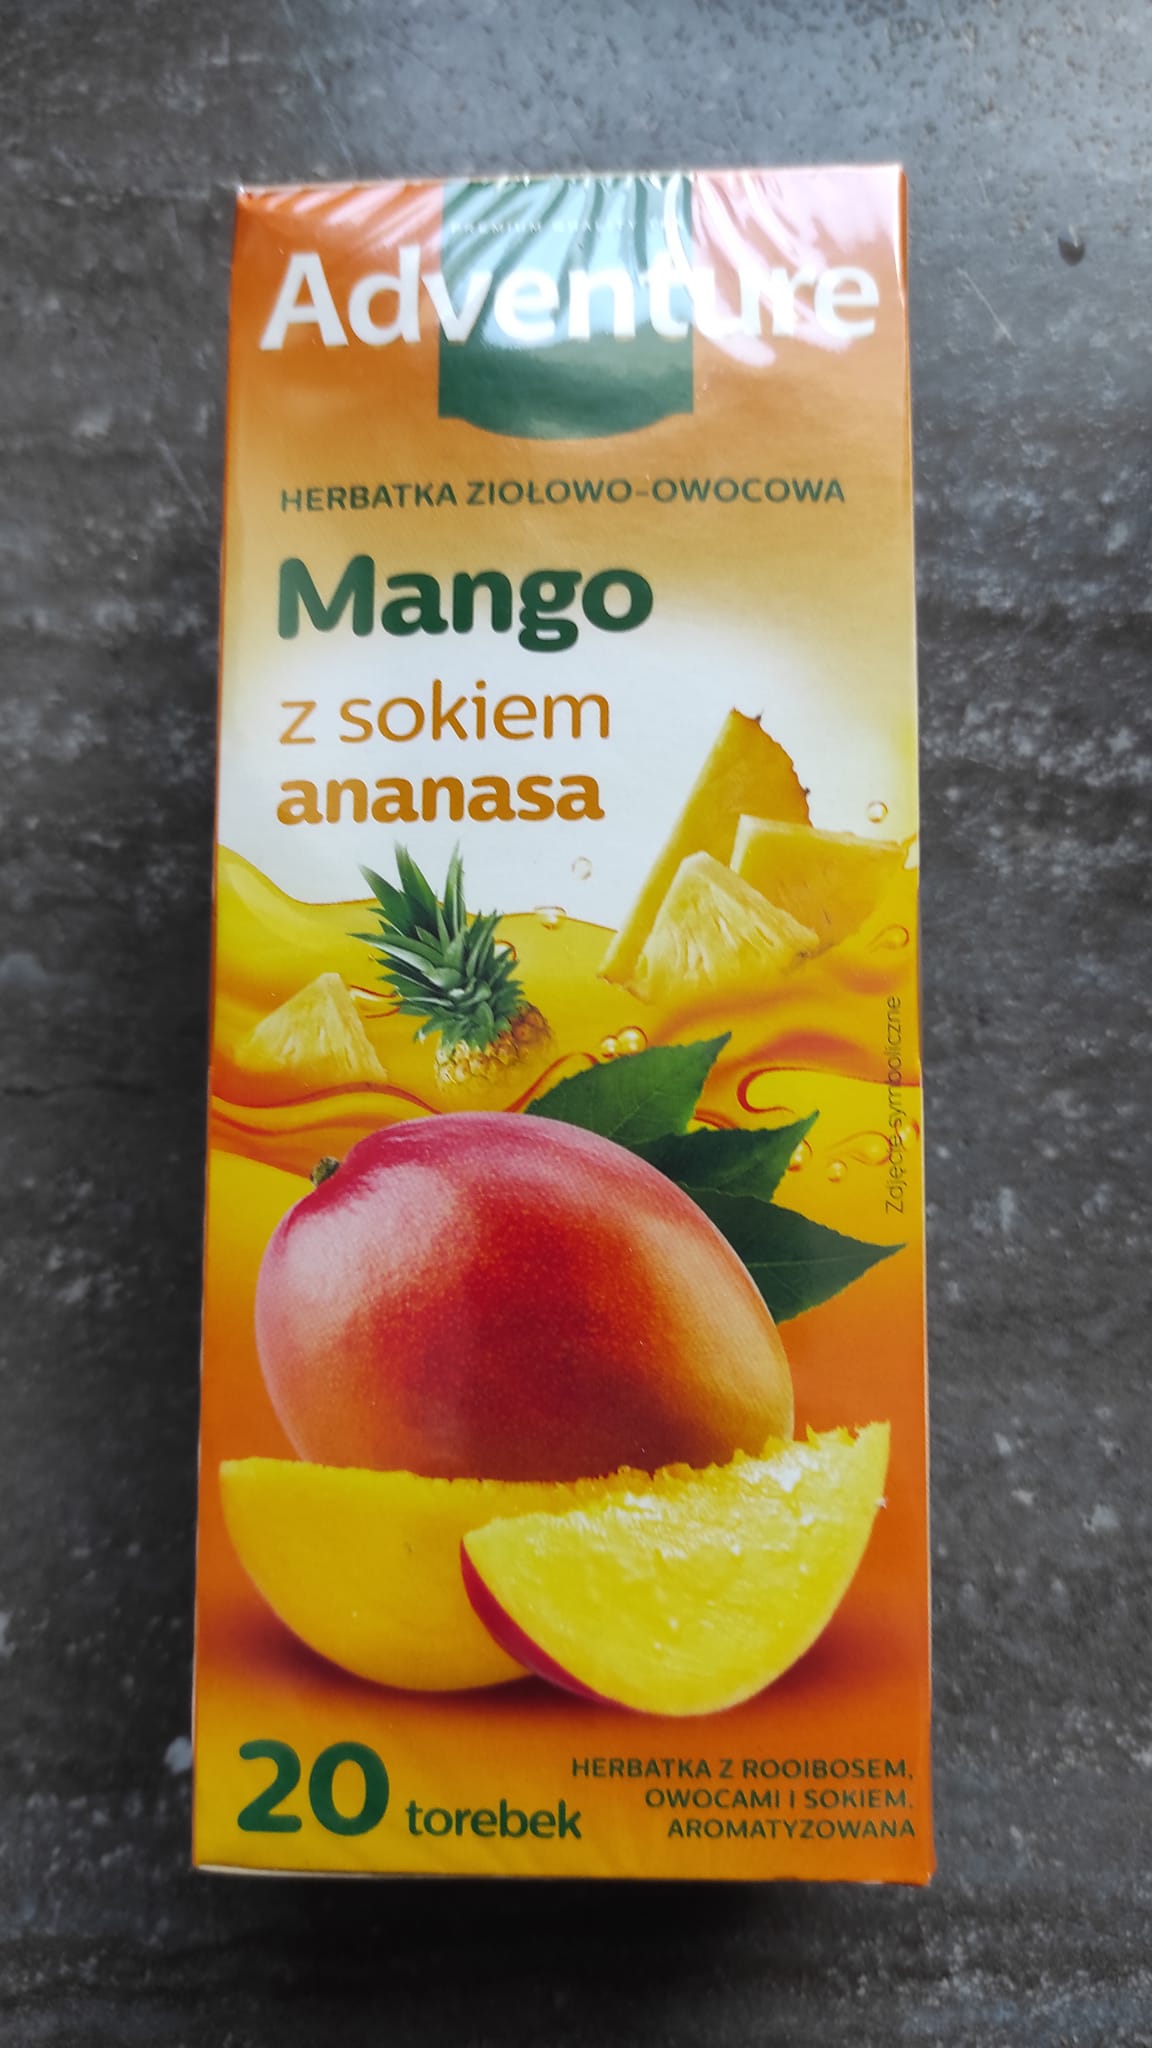 Herbatka ziołowo-owocowa Mango – Adventure 5 (1)